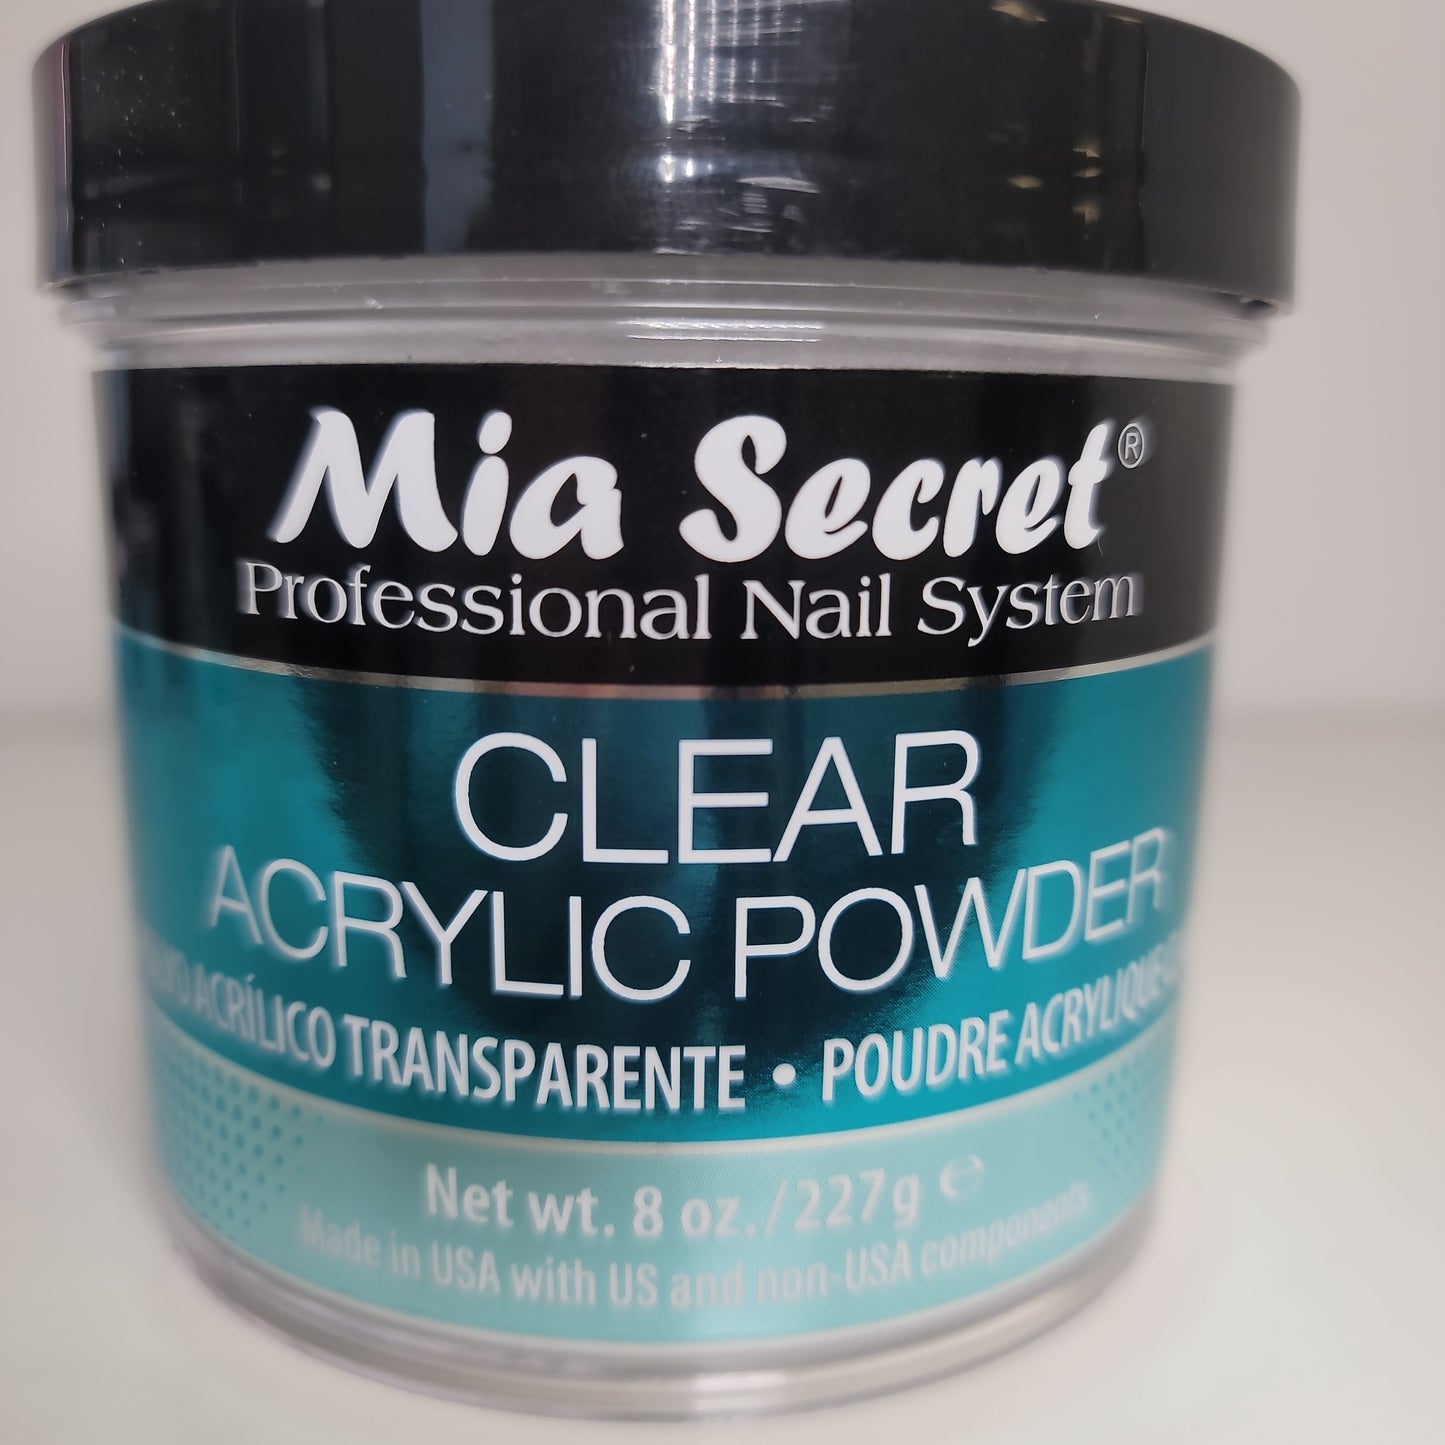 Clear acrylic powder